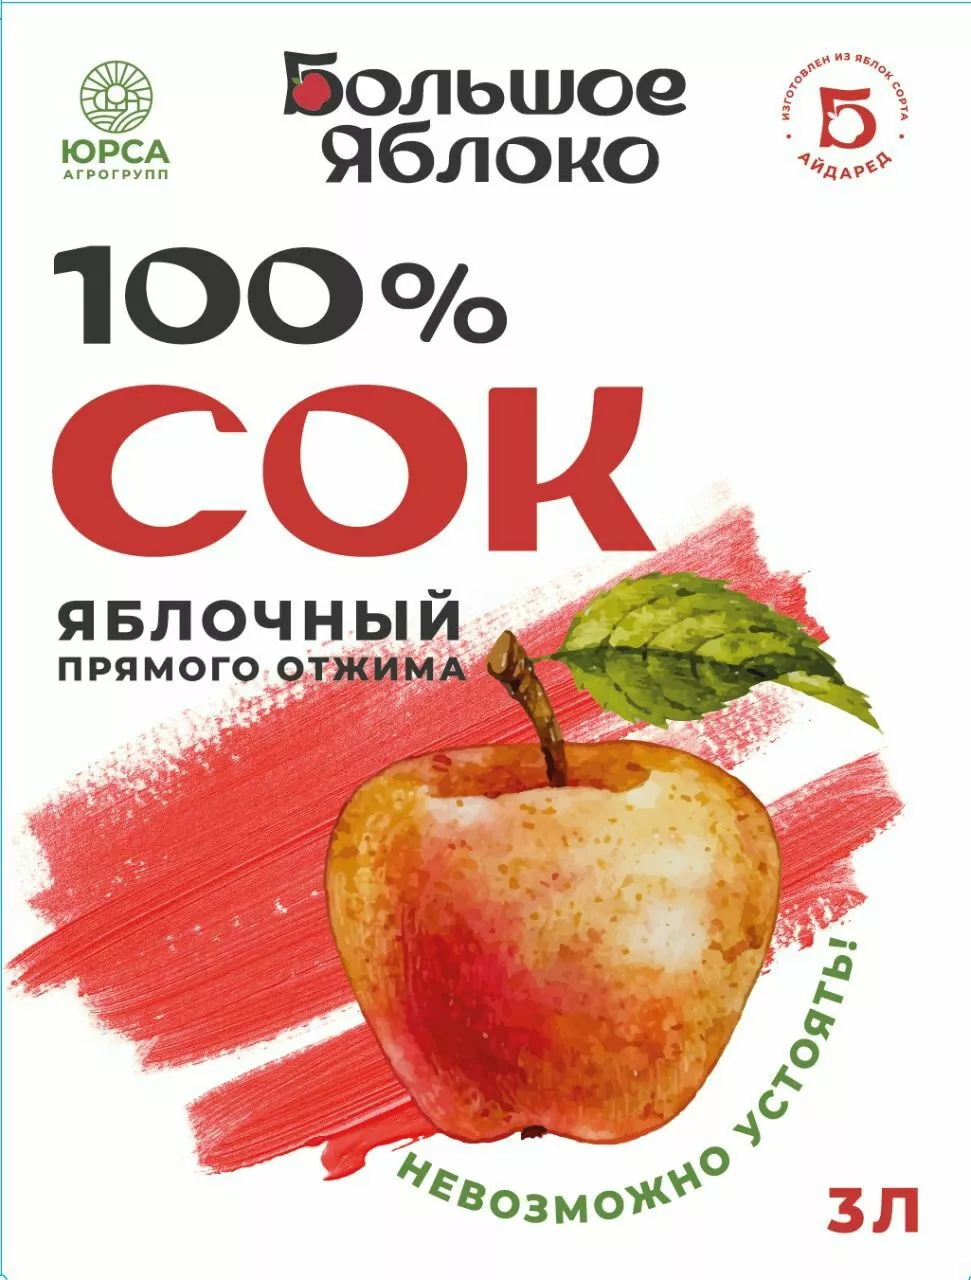 сок яблочный прямого отжима 100% в Калининграде и Калиниградской области 3